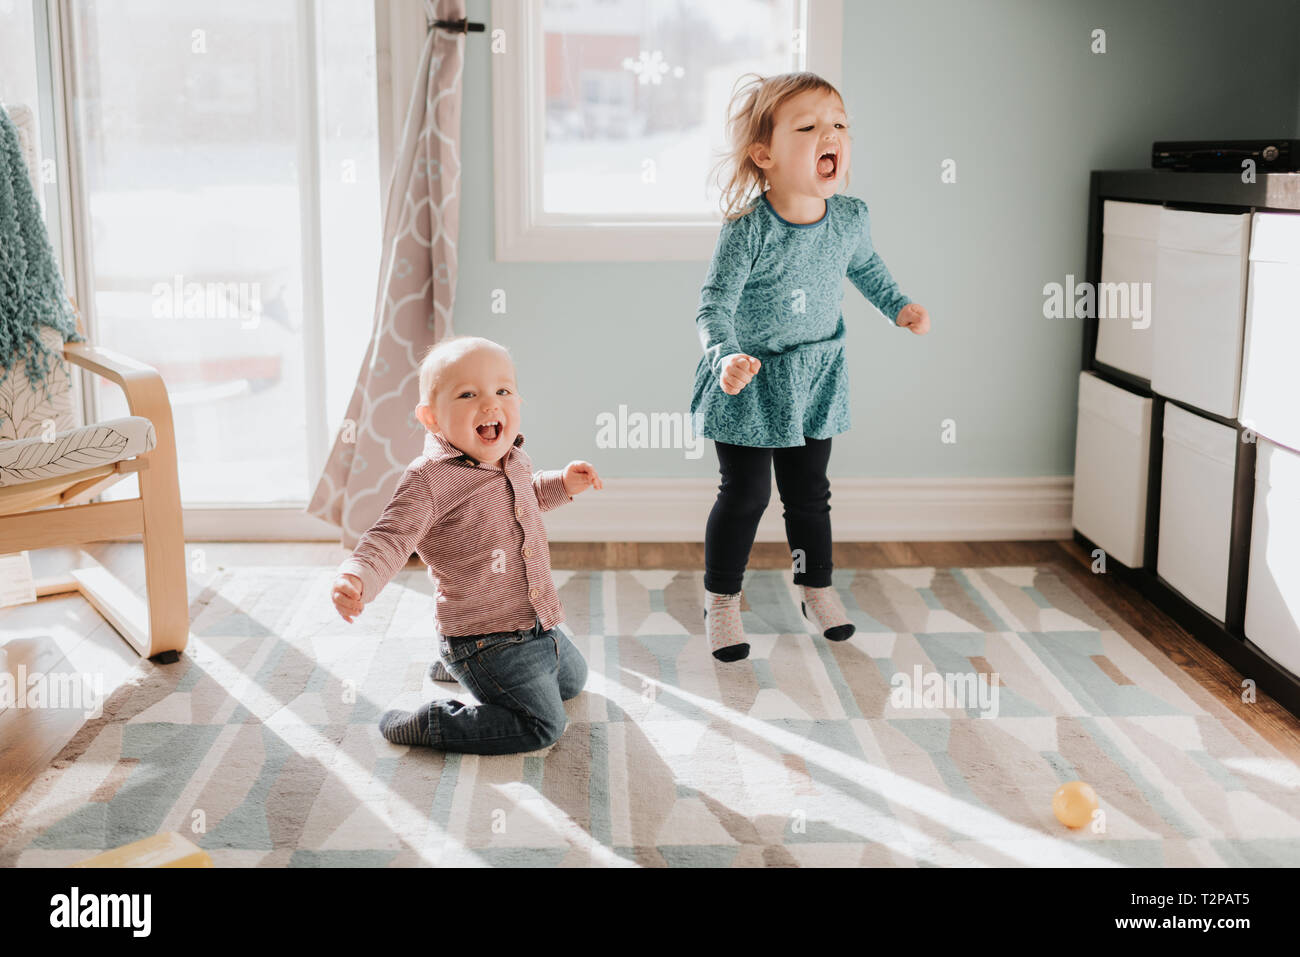 Femme enfant et bébé frère jouant sur des tapis de salon Banque D'Images